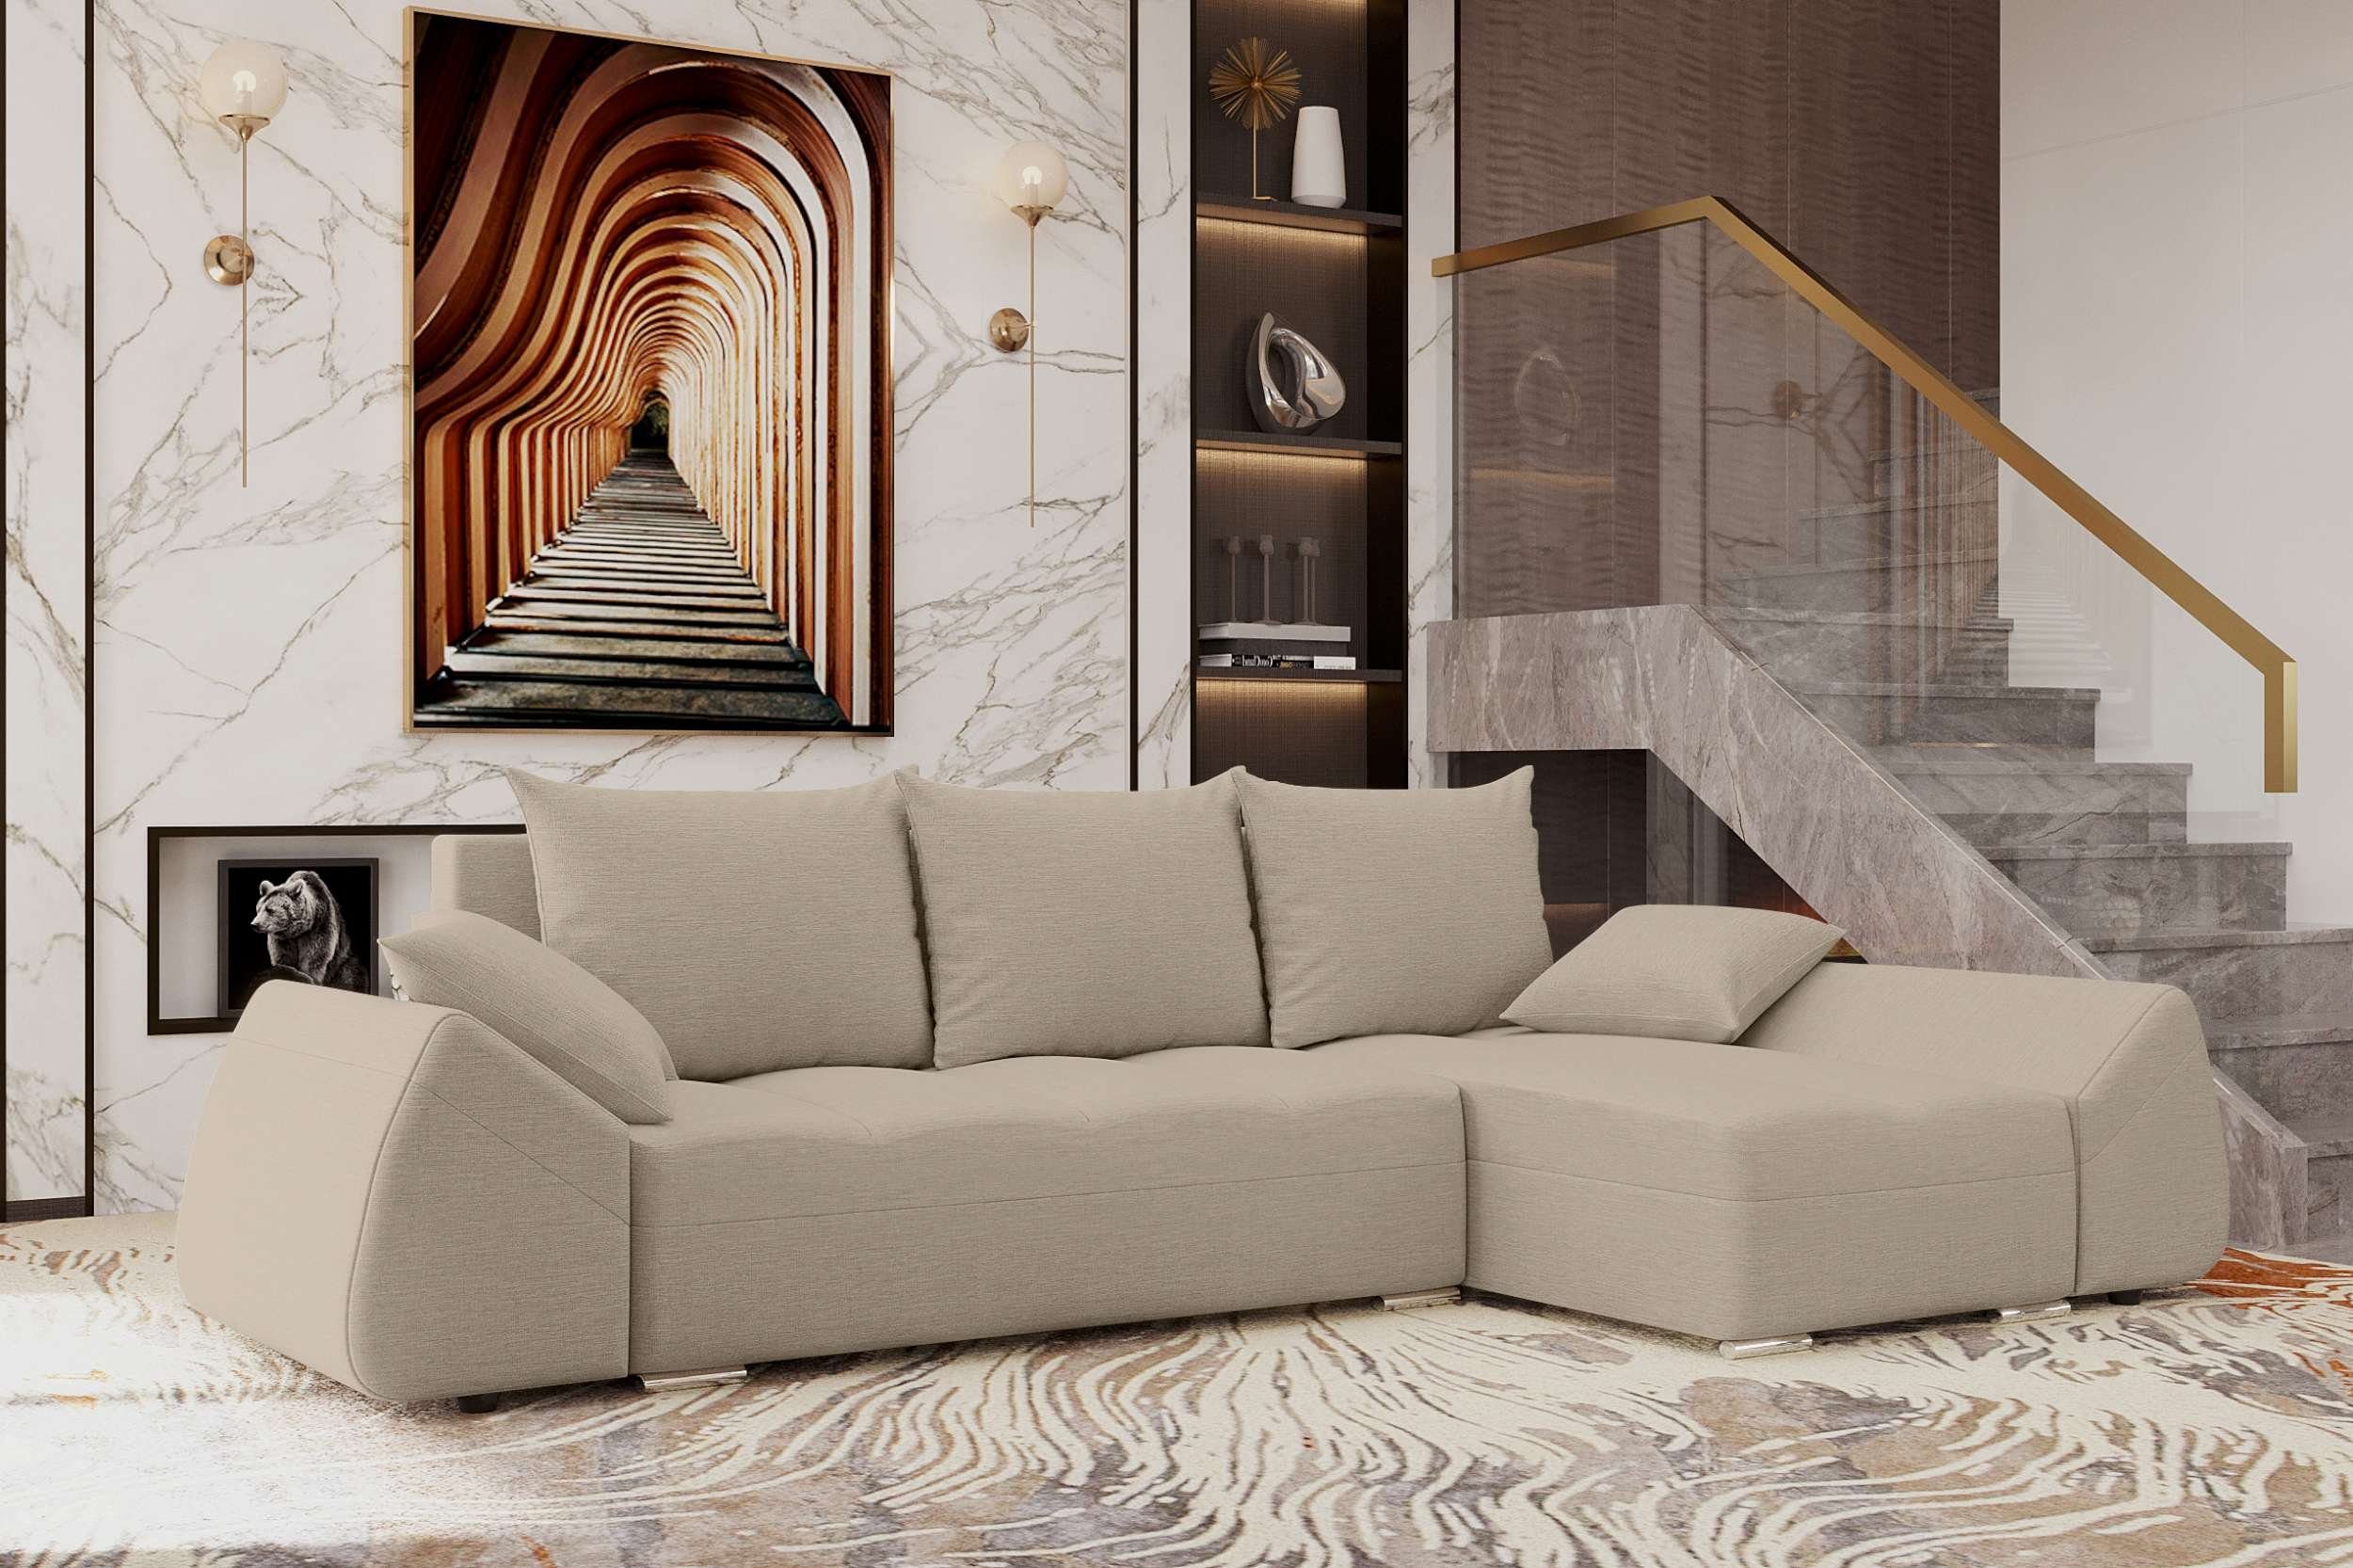 Stylefy Ecksofa Eckcouch, Sofa, Sitzkomfort, Bettkasten, mit Bettfunktion, mit L-Form, Design Cascade, Modern